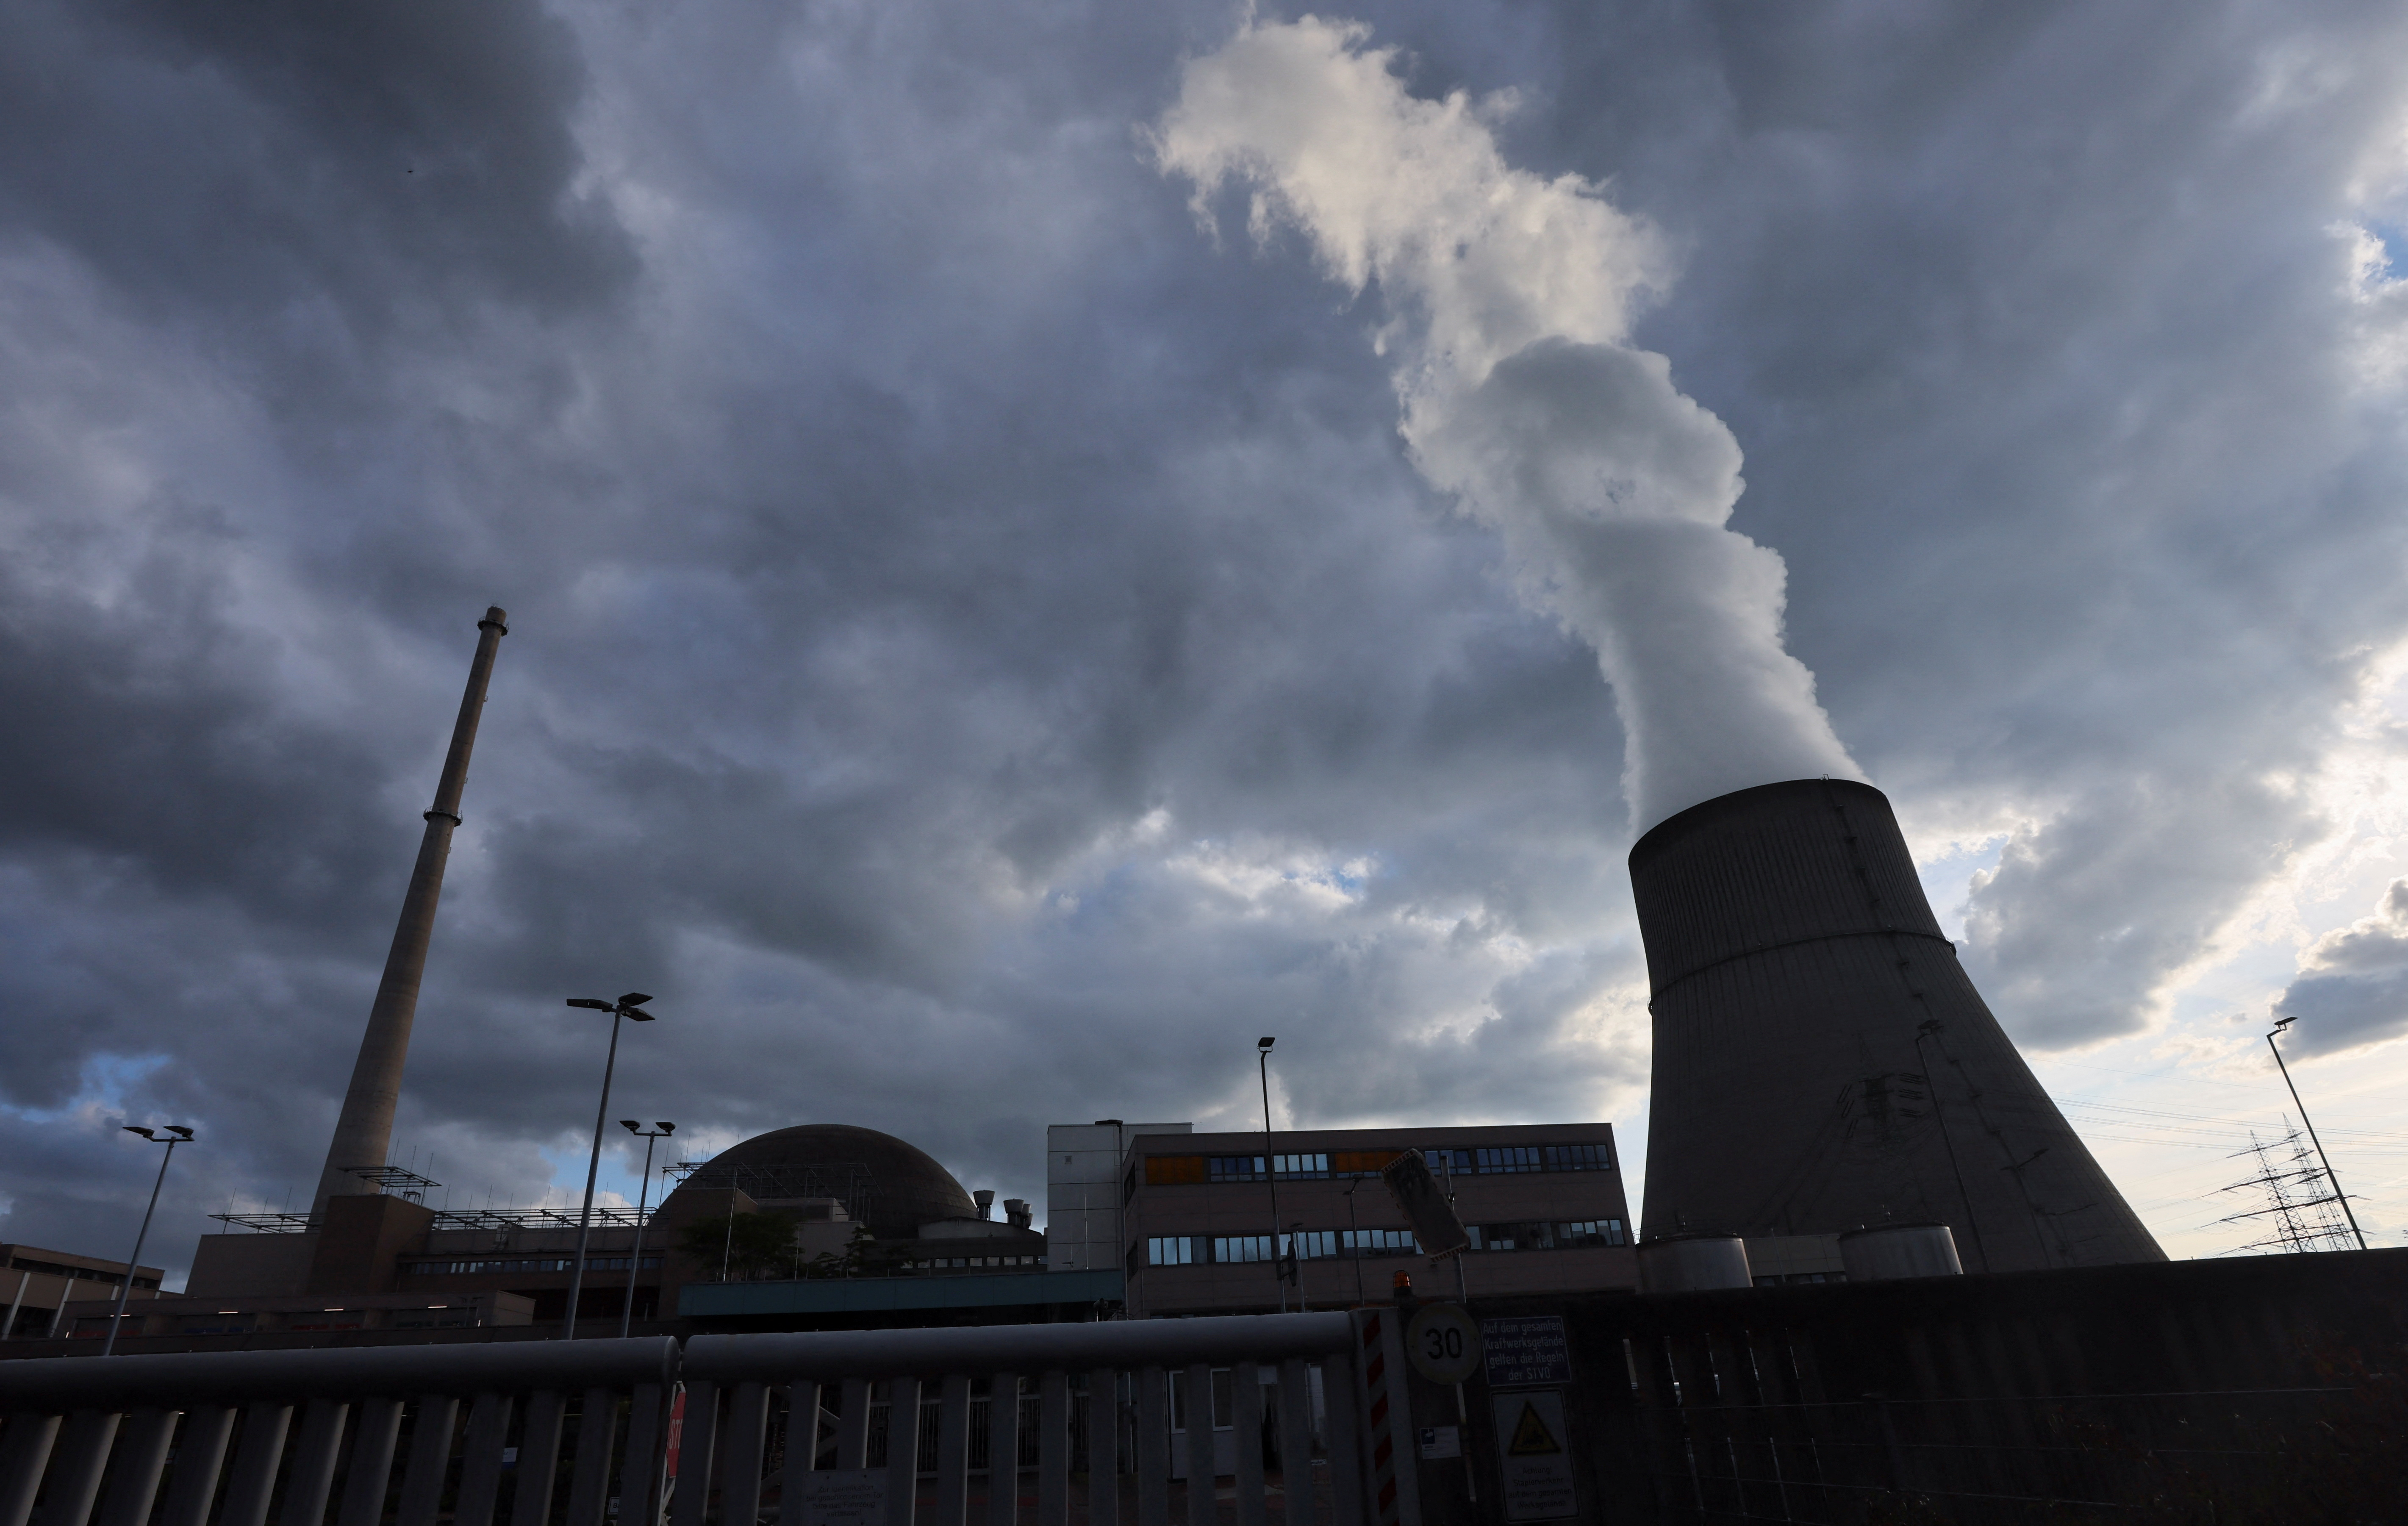 Se ven nubes sobre la torre de enfriamiento y la planta de energía nuclear Emsland junto al río Ems en medio de la crisis energética causada por la invasión rusa de Ucrania, en las afueras de la ciudad noroccidental de Lingen, Alemania. REUTERS/Wolfgang rattay